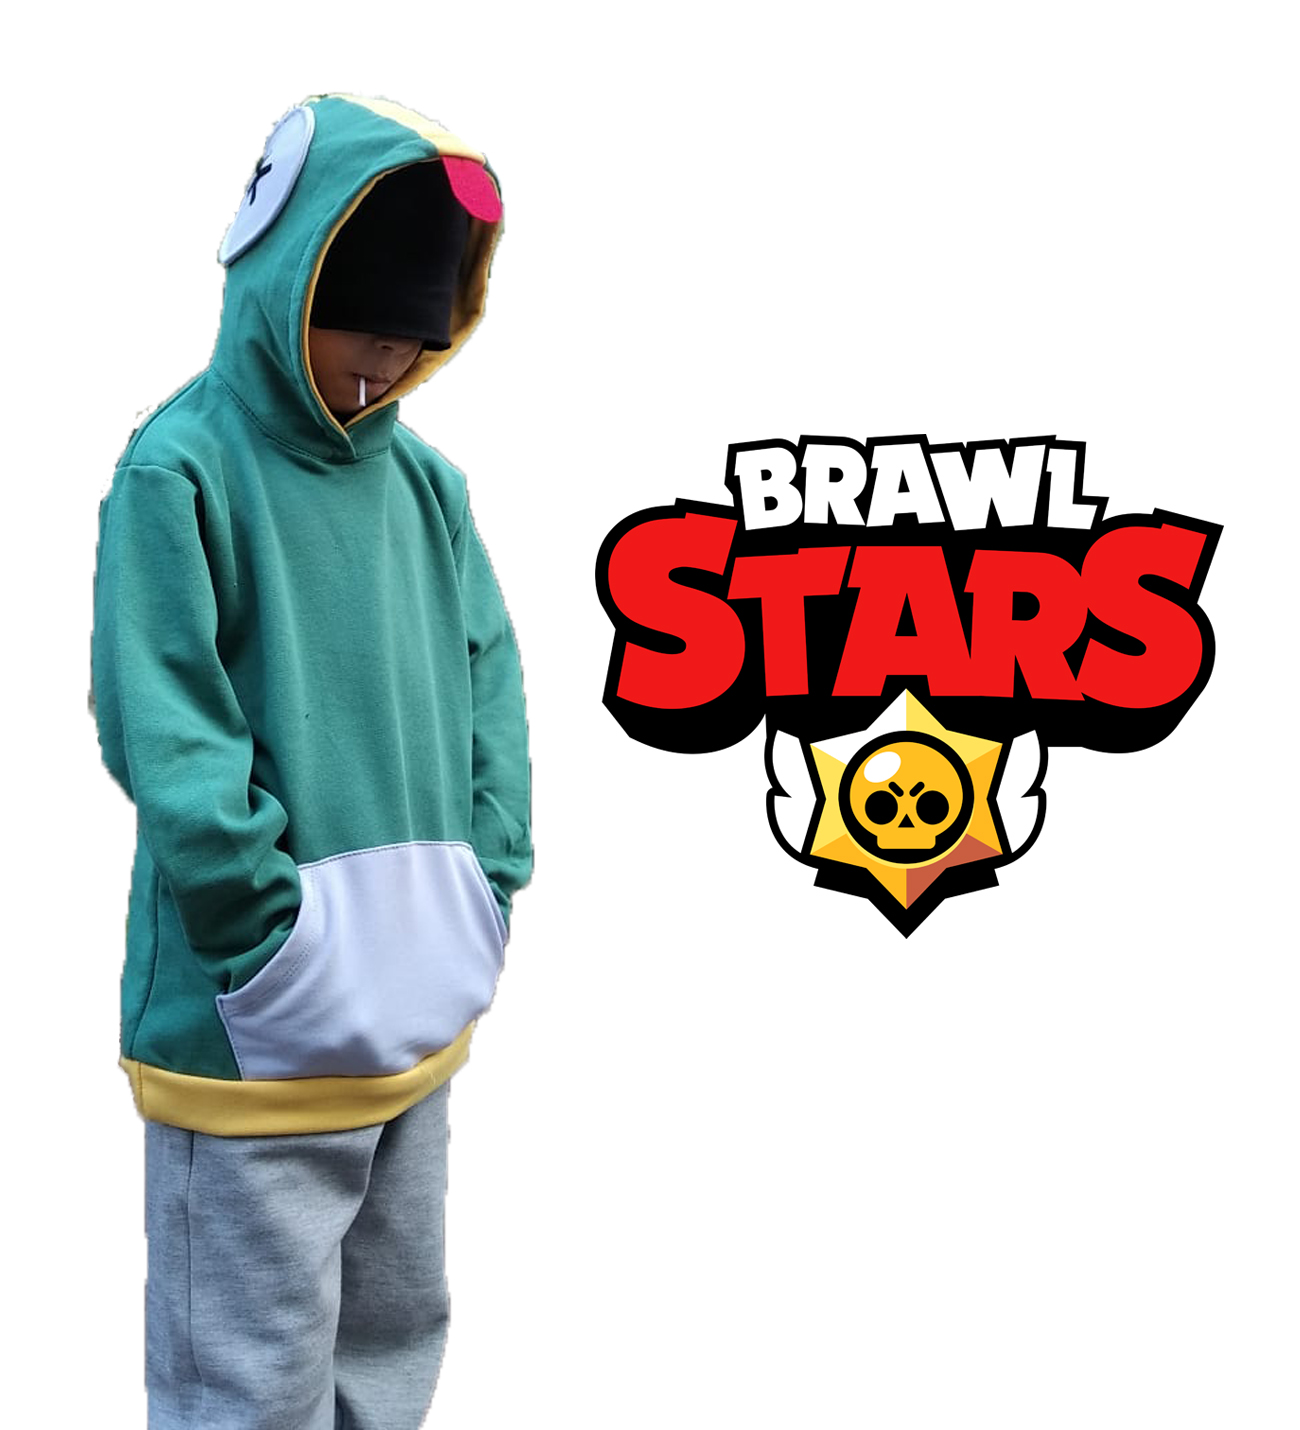 Brawl stars Leon kostüm sweatshirt